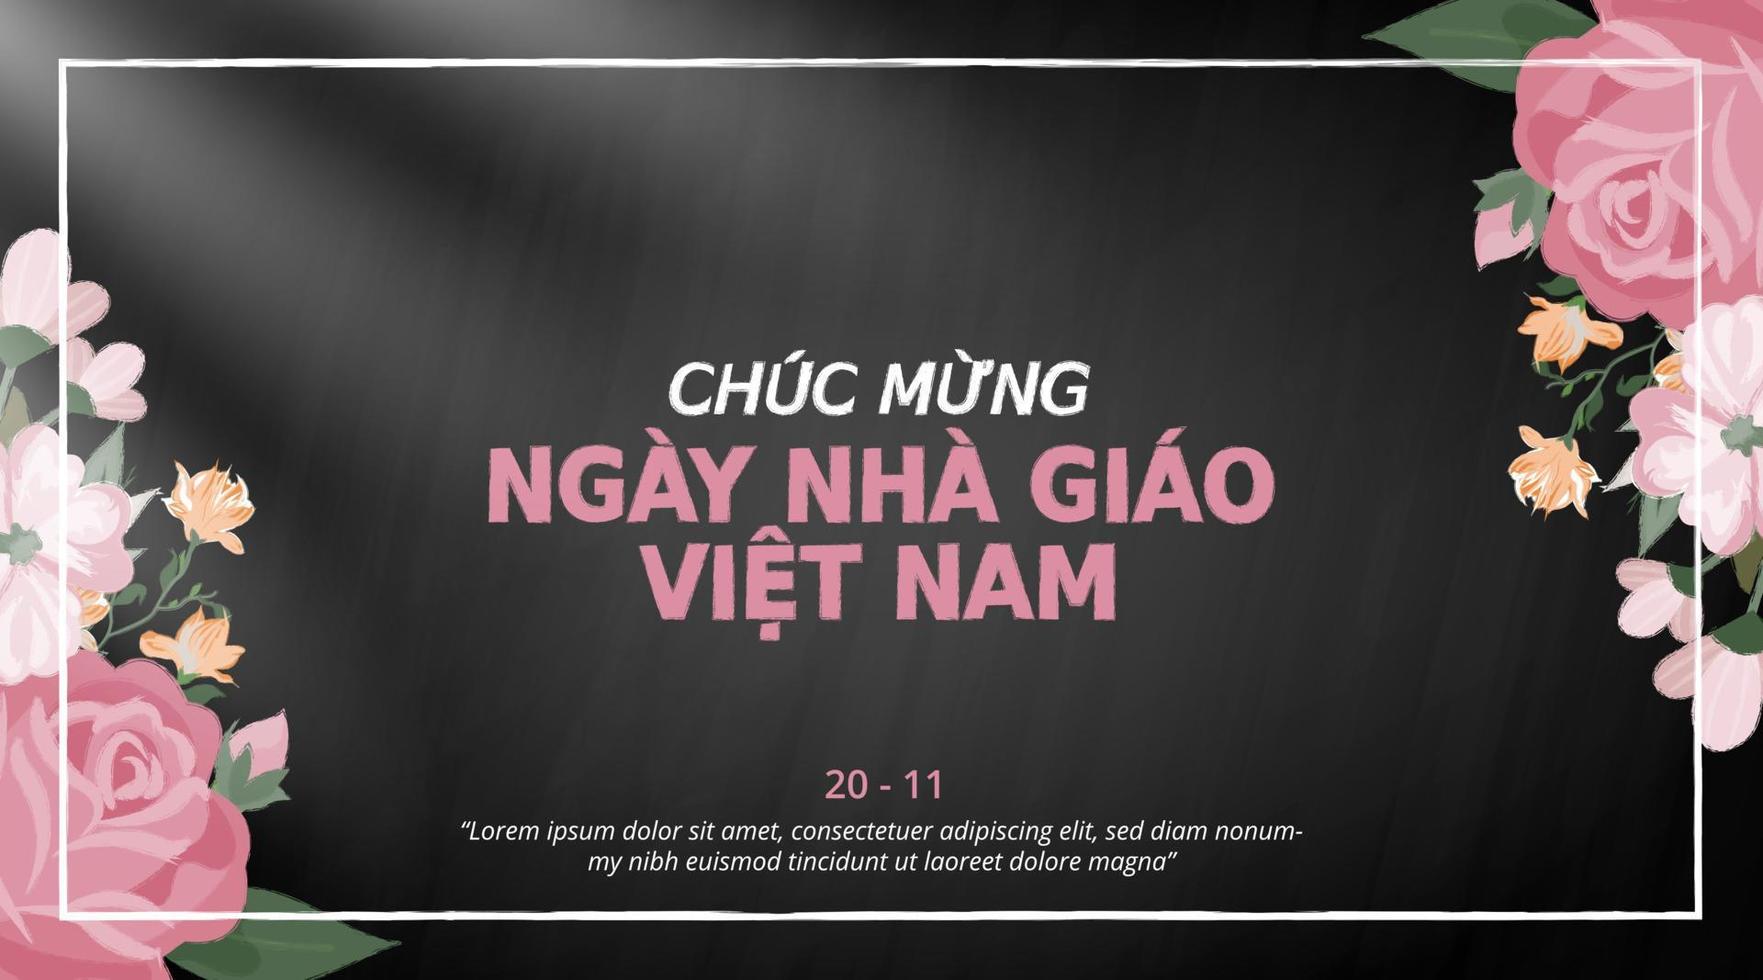 Chuc mung gay nha giao viet nam o contento vietnamita profesores día antecedentes con tiza flor decoración en un pizarra vector